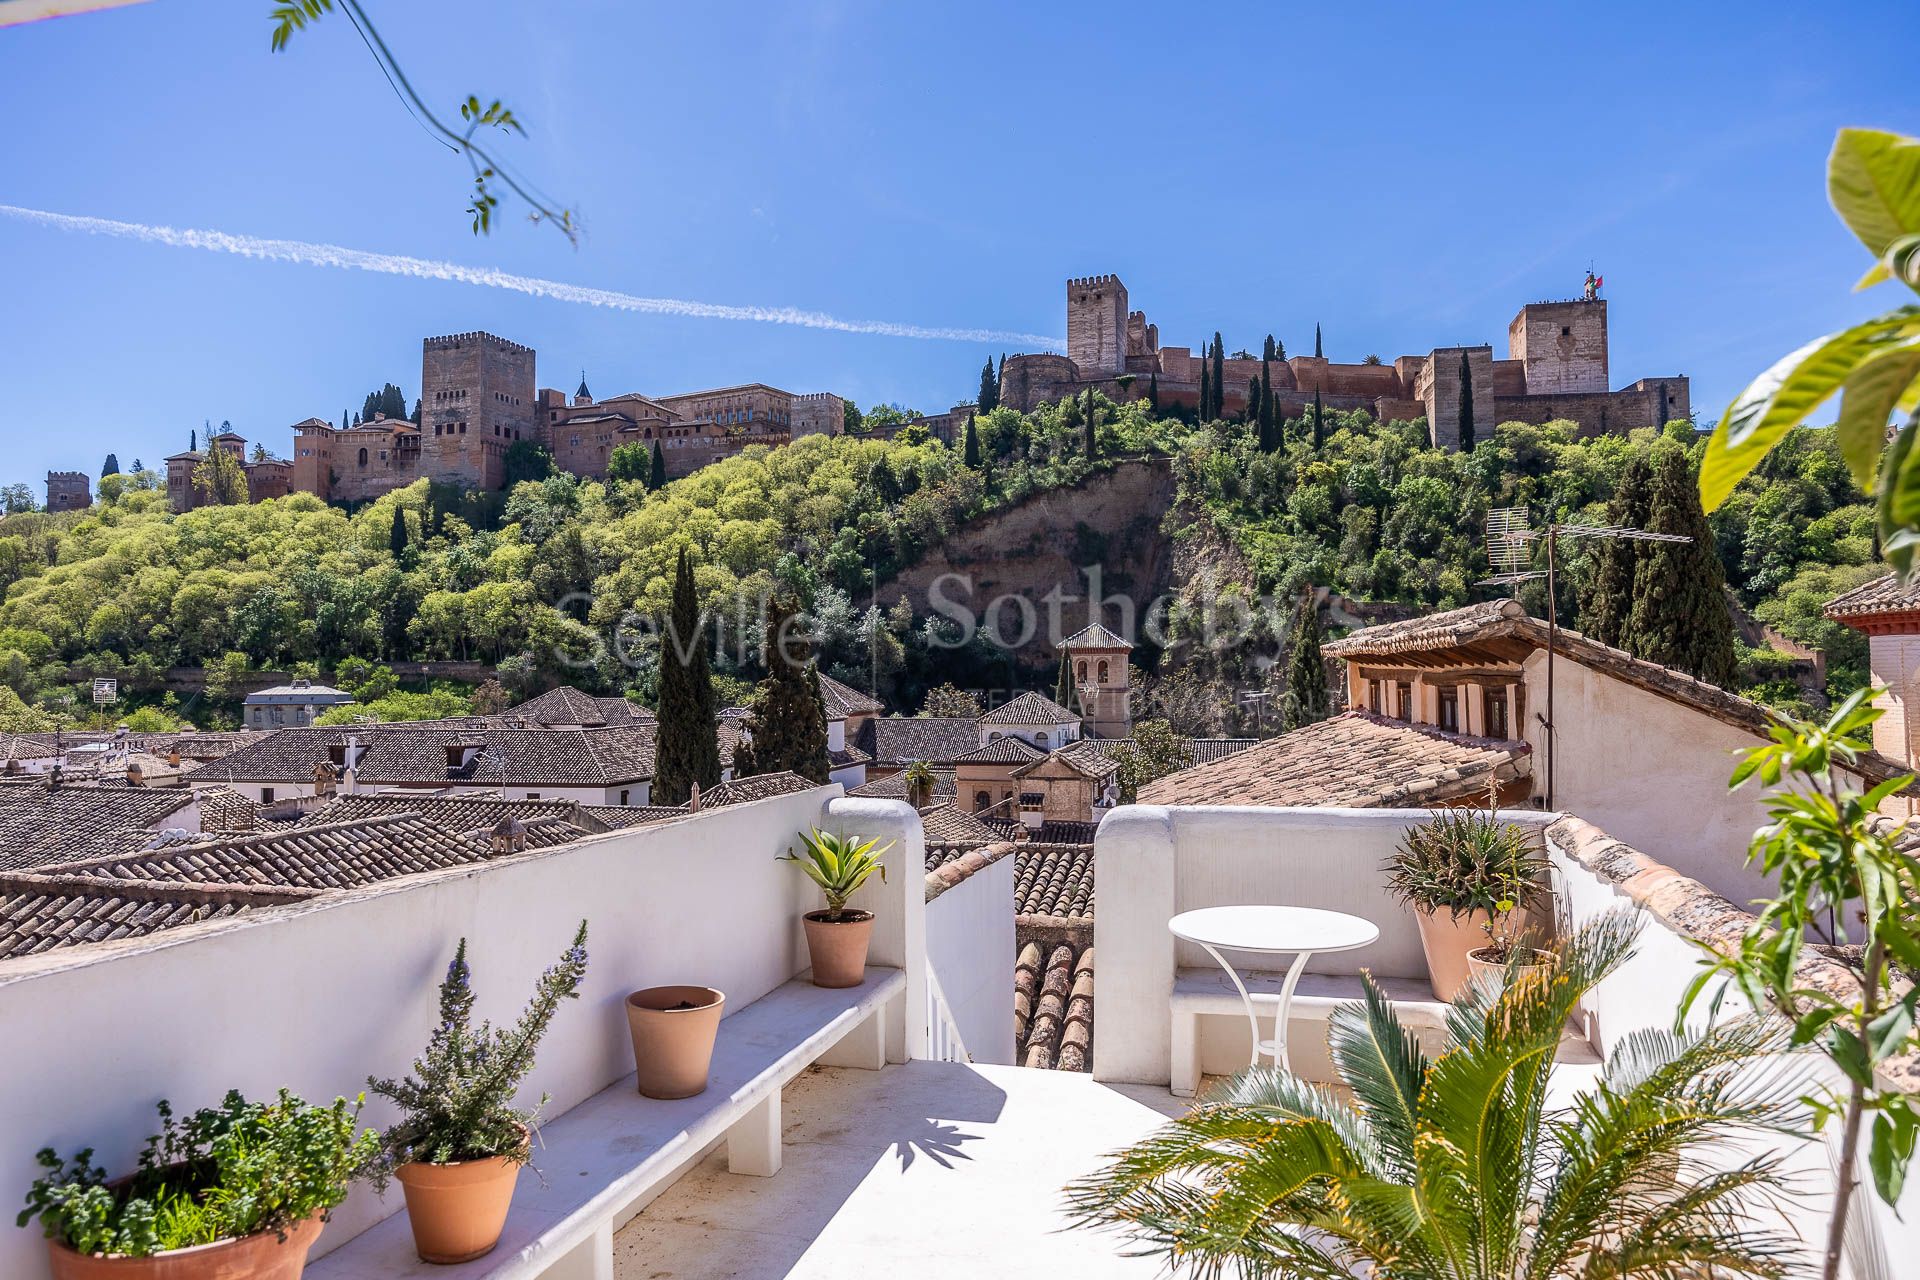 Encantadora vivienda en el corazón del barrio de Albaicín en Granada.